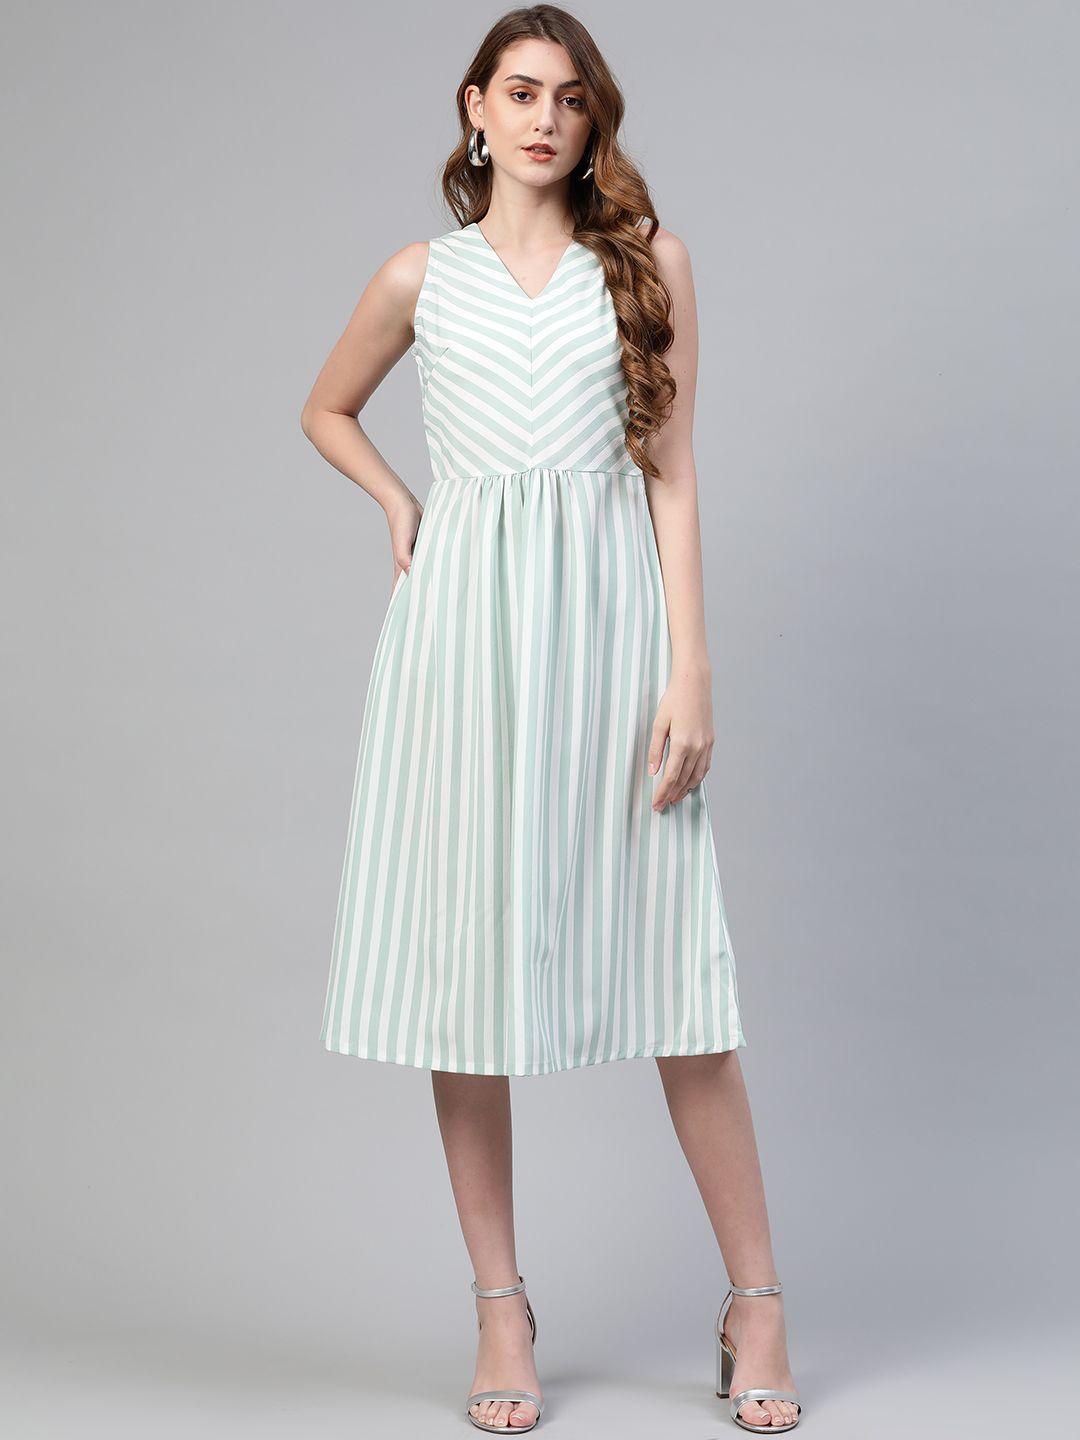 pluss women white & sea green striped a-line dress